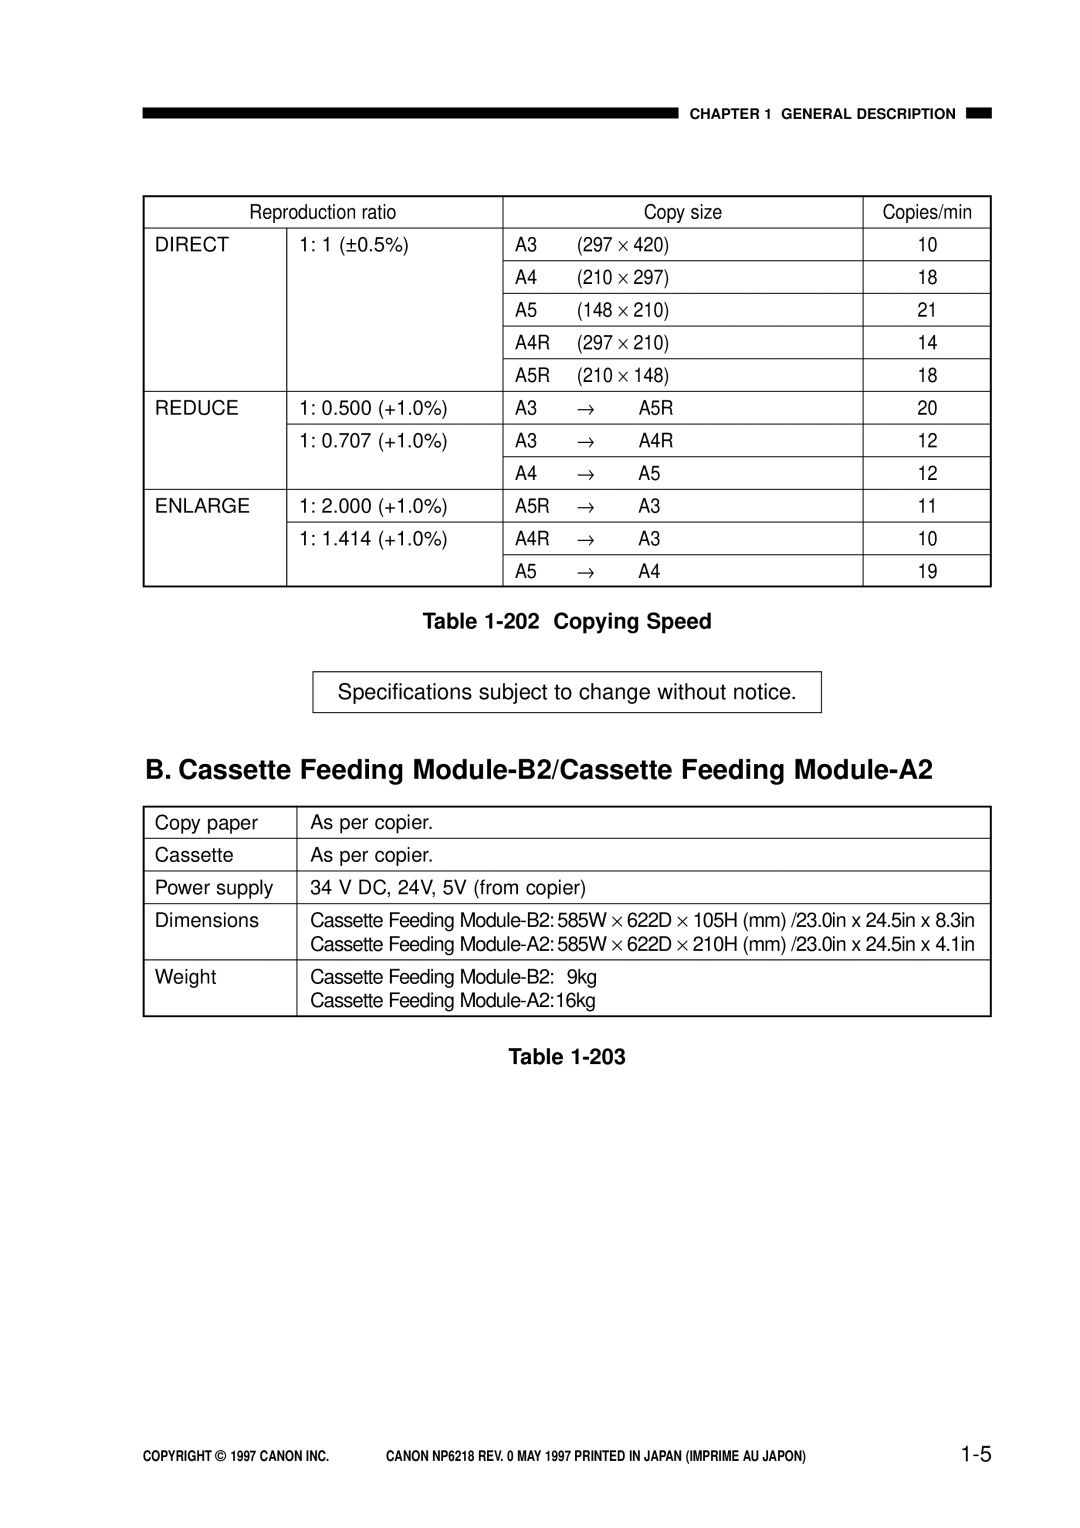 Canon NP6218, FY8-13EX-000 service manual B. Cassette Feeding Module-B2/Cassette Feeding Module-A2, 202 Copying Speed 